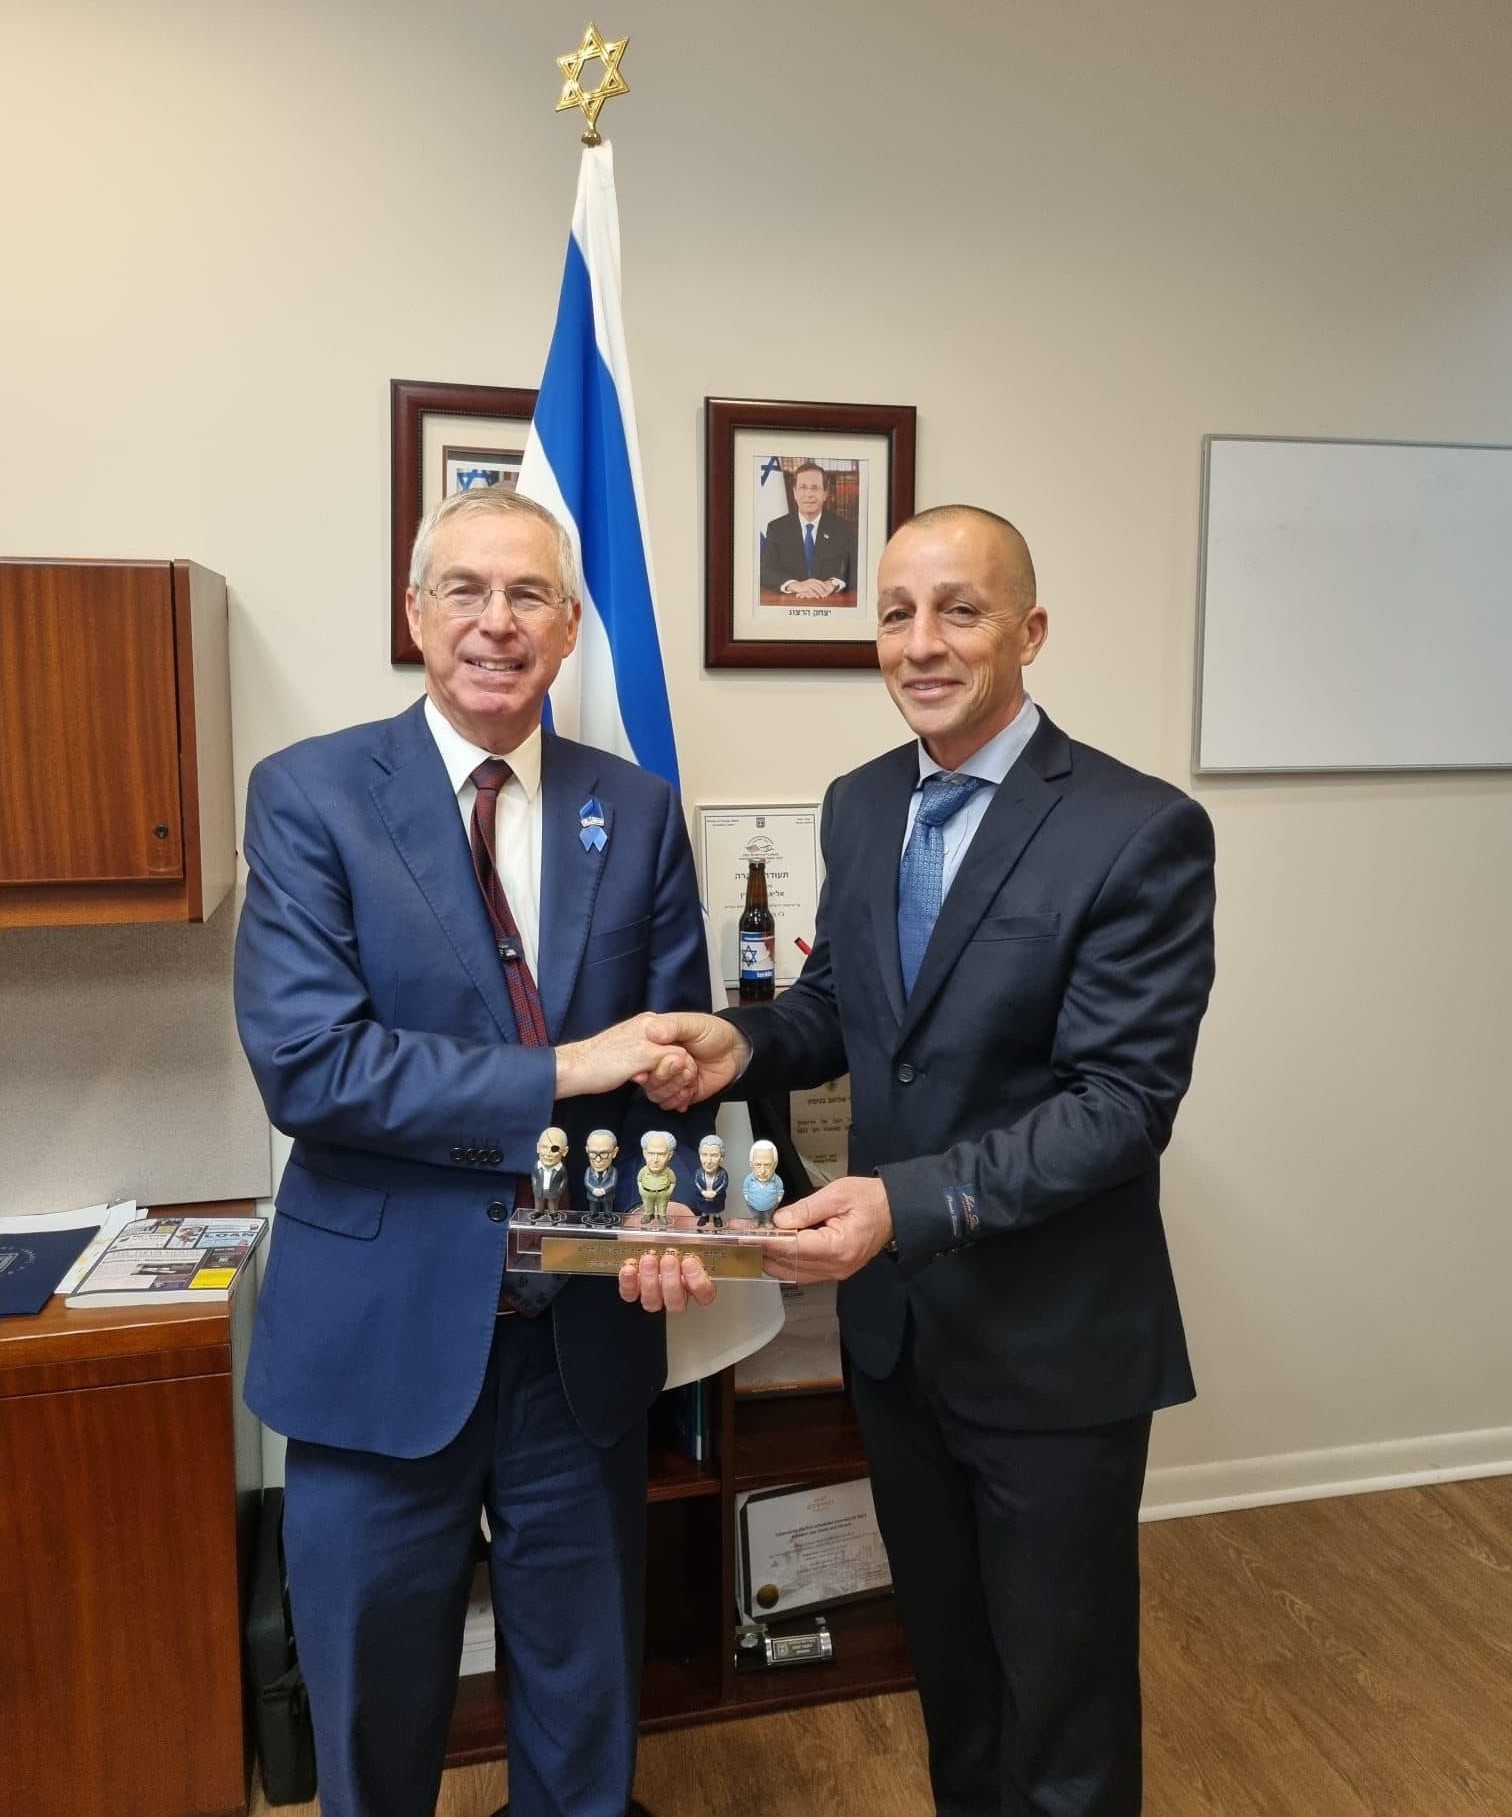 אופיר אלקלעי מימין עם שגריר ישראל בארהב - מייק הרצוג